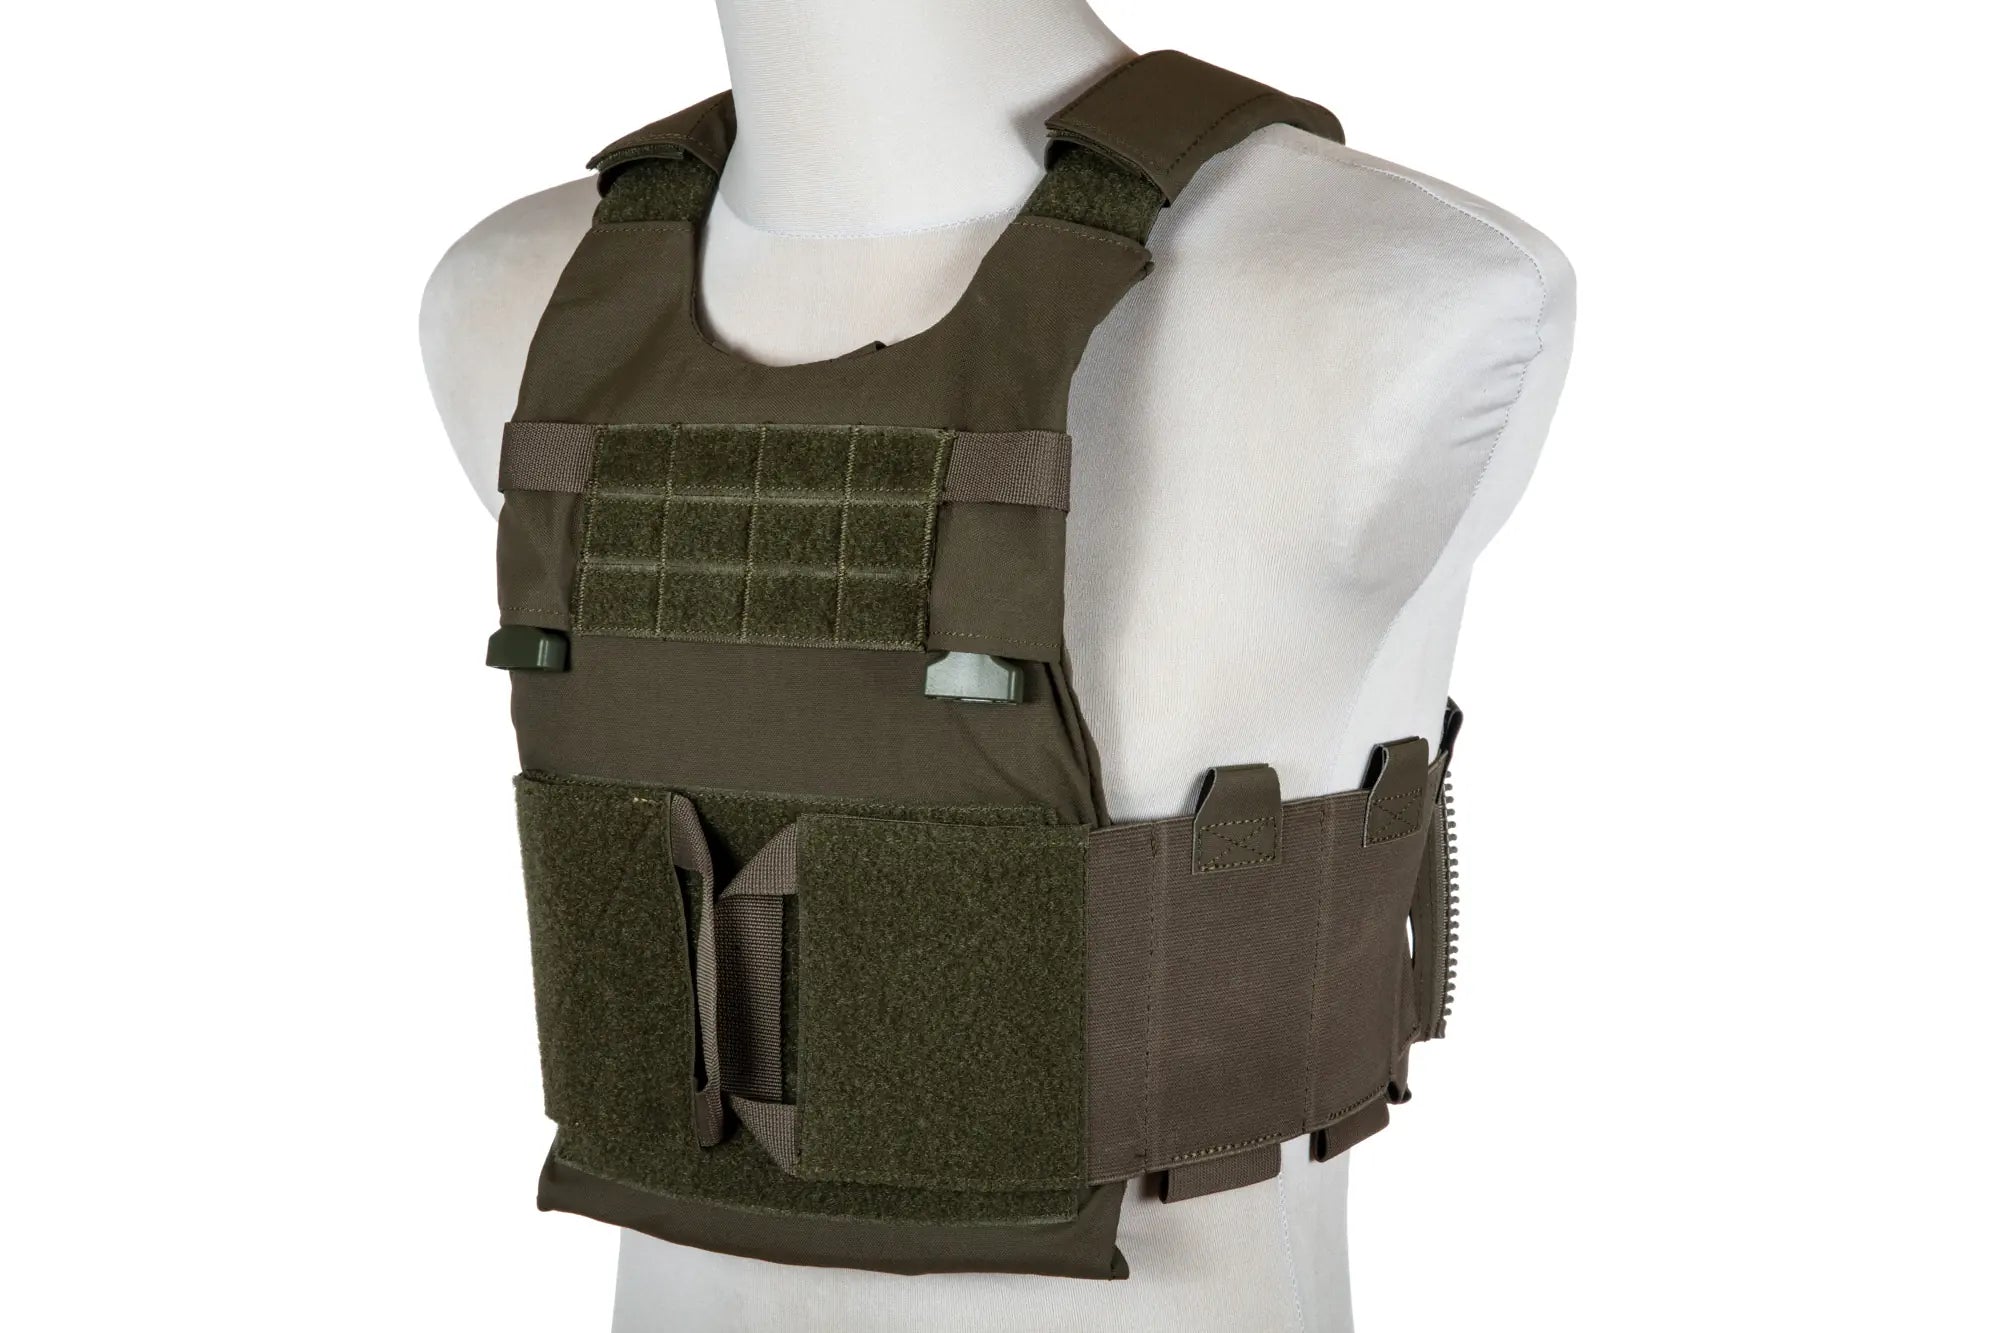 LV-119 Type Tactical Vest - Olive